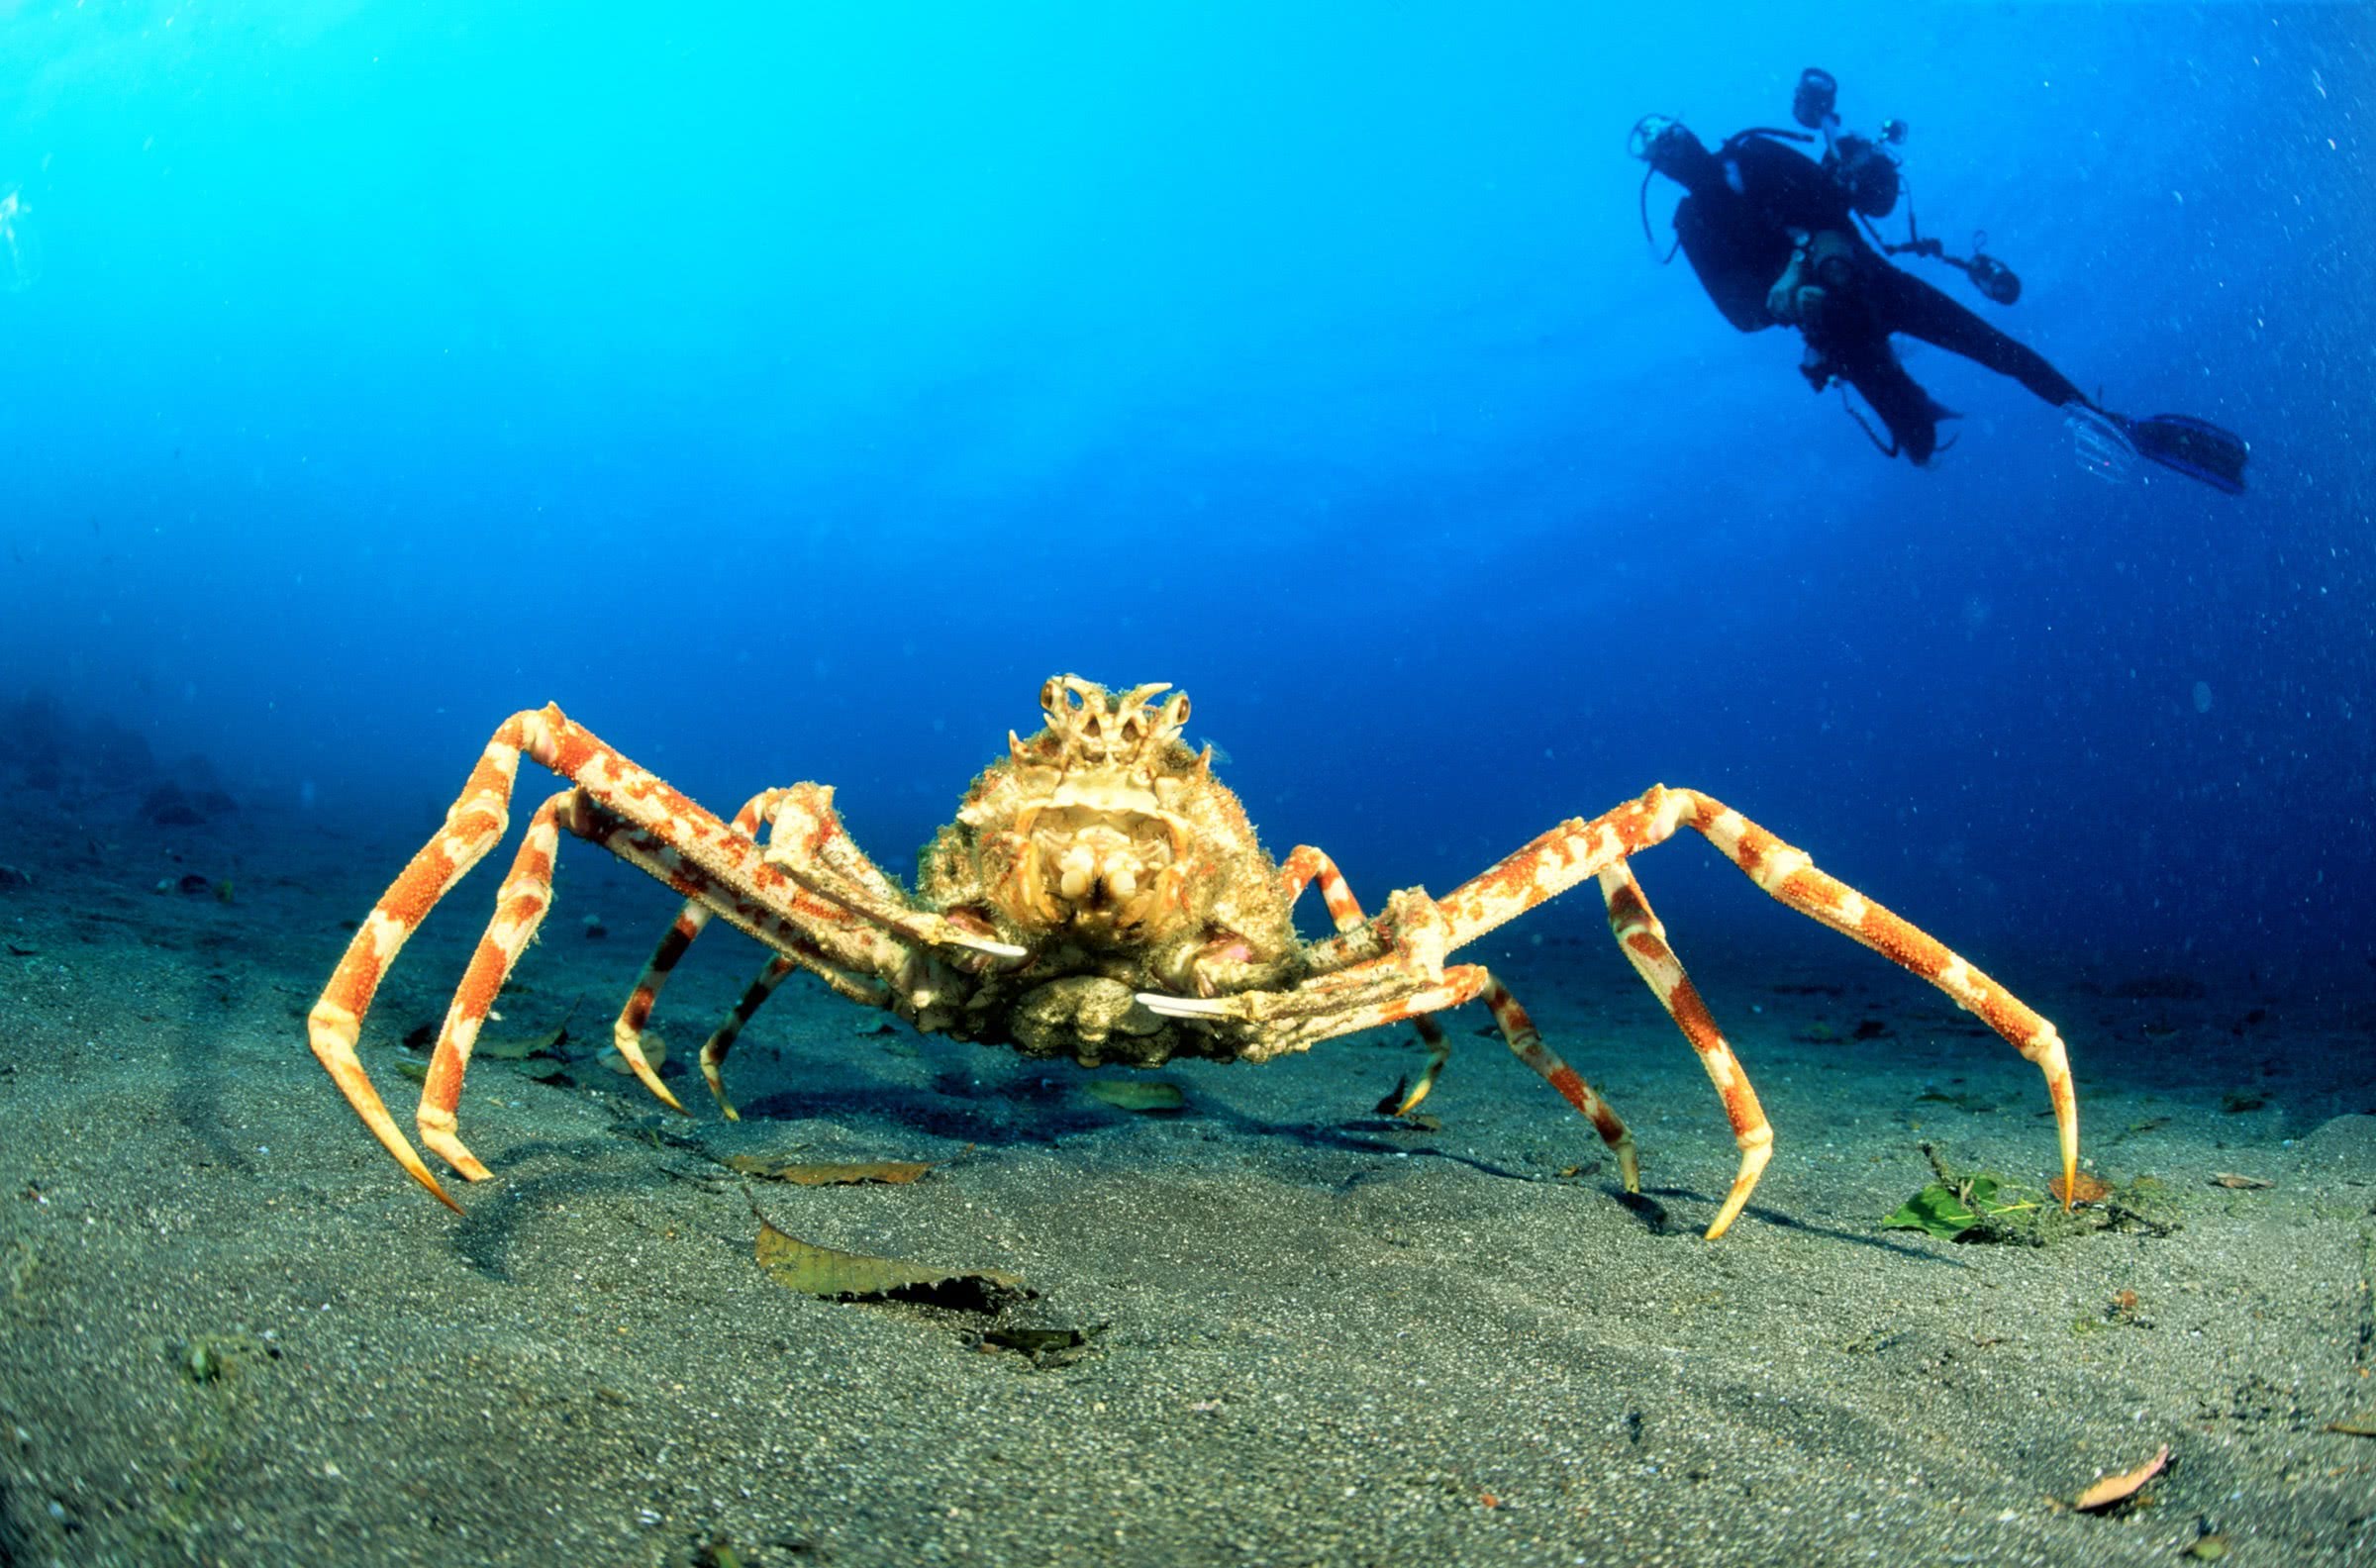 全球最大的螃蟹:身长4米可以活100多年,鲨鱼未必是其对手!